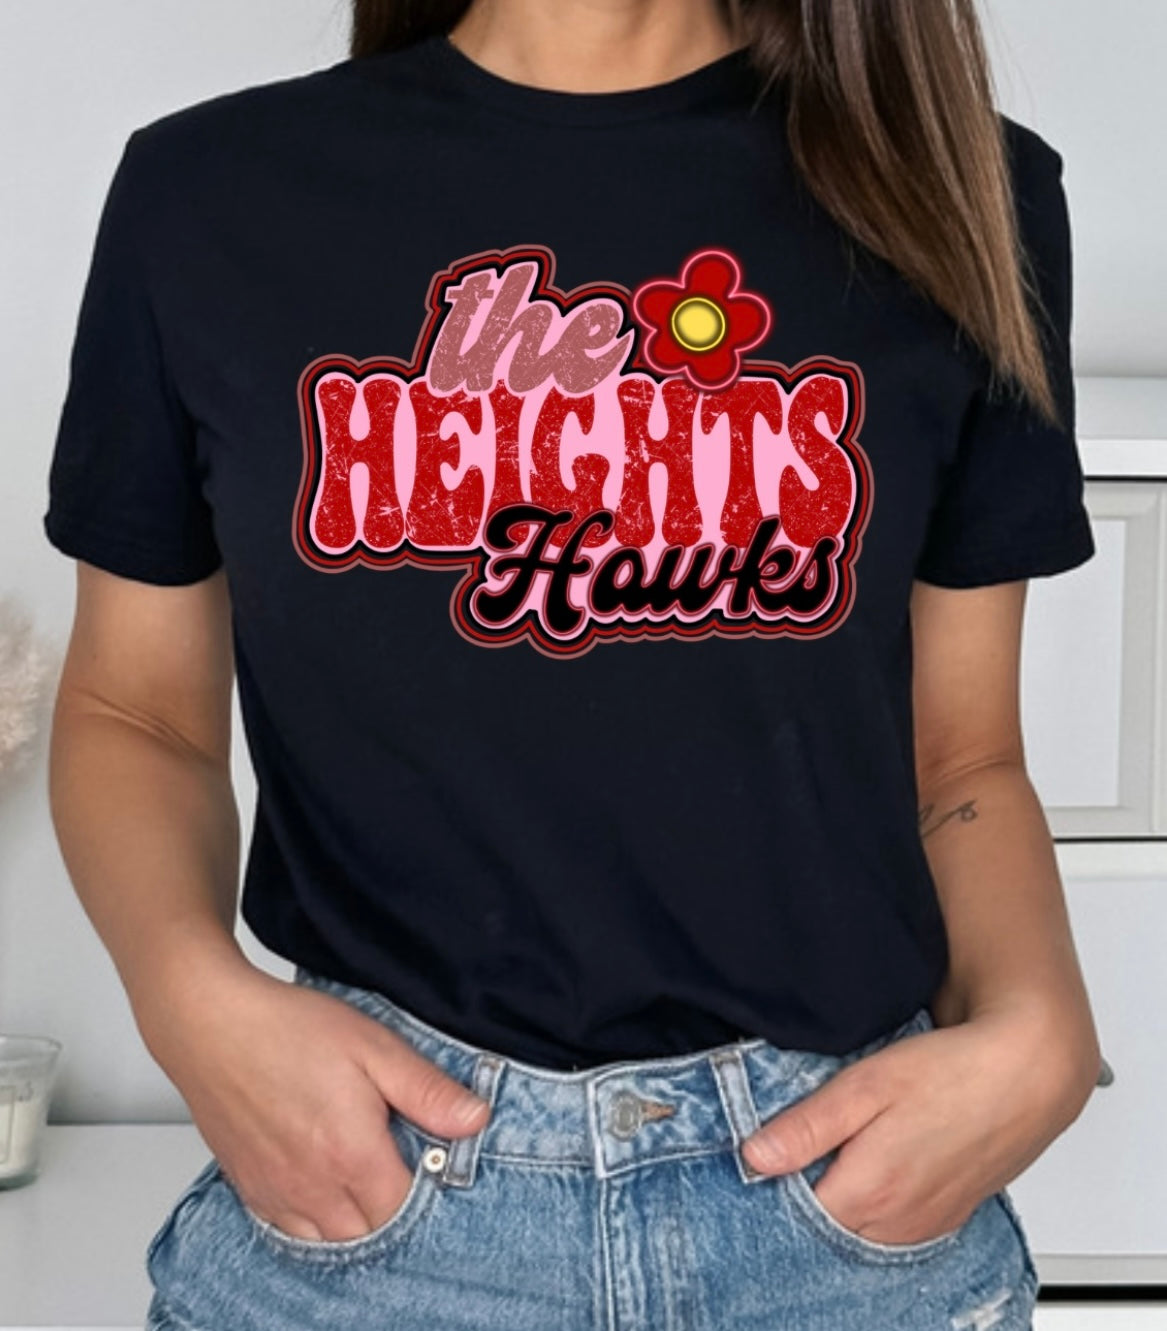 Heights Hawks